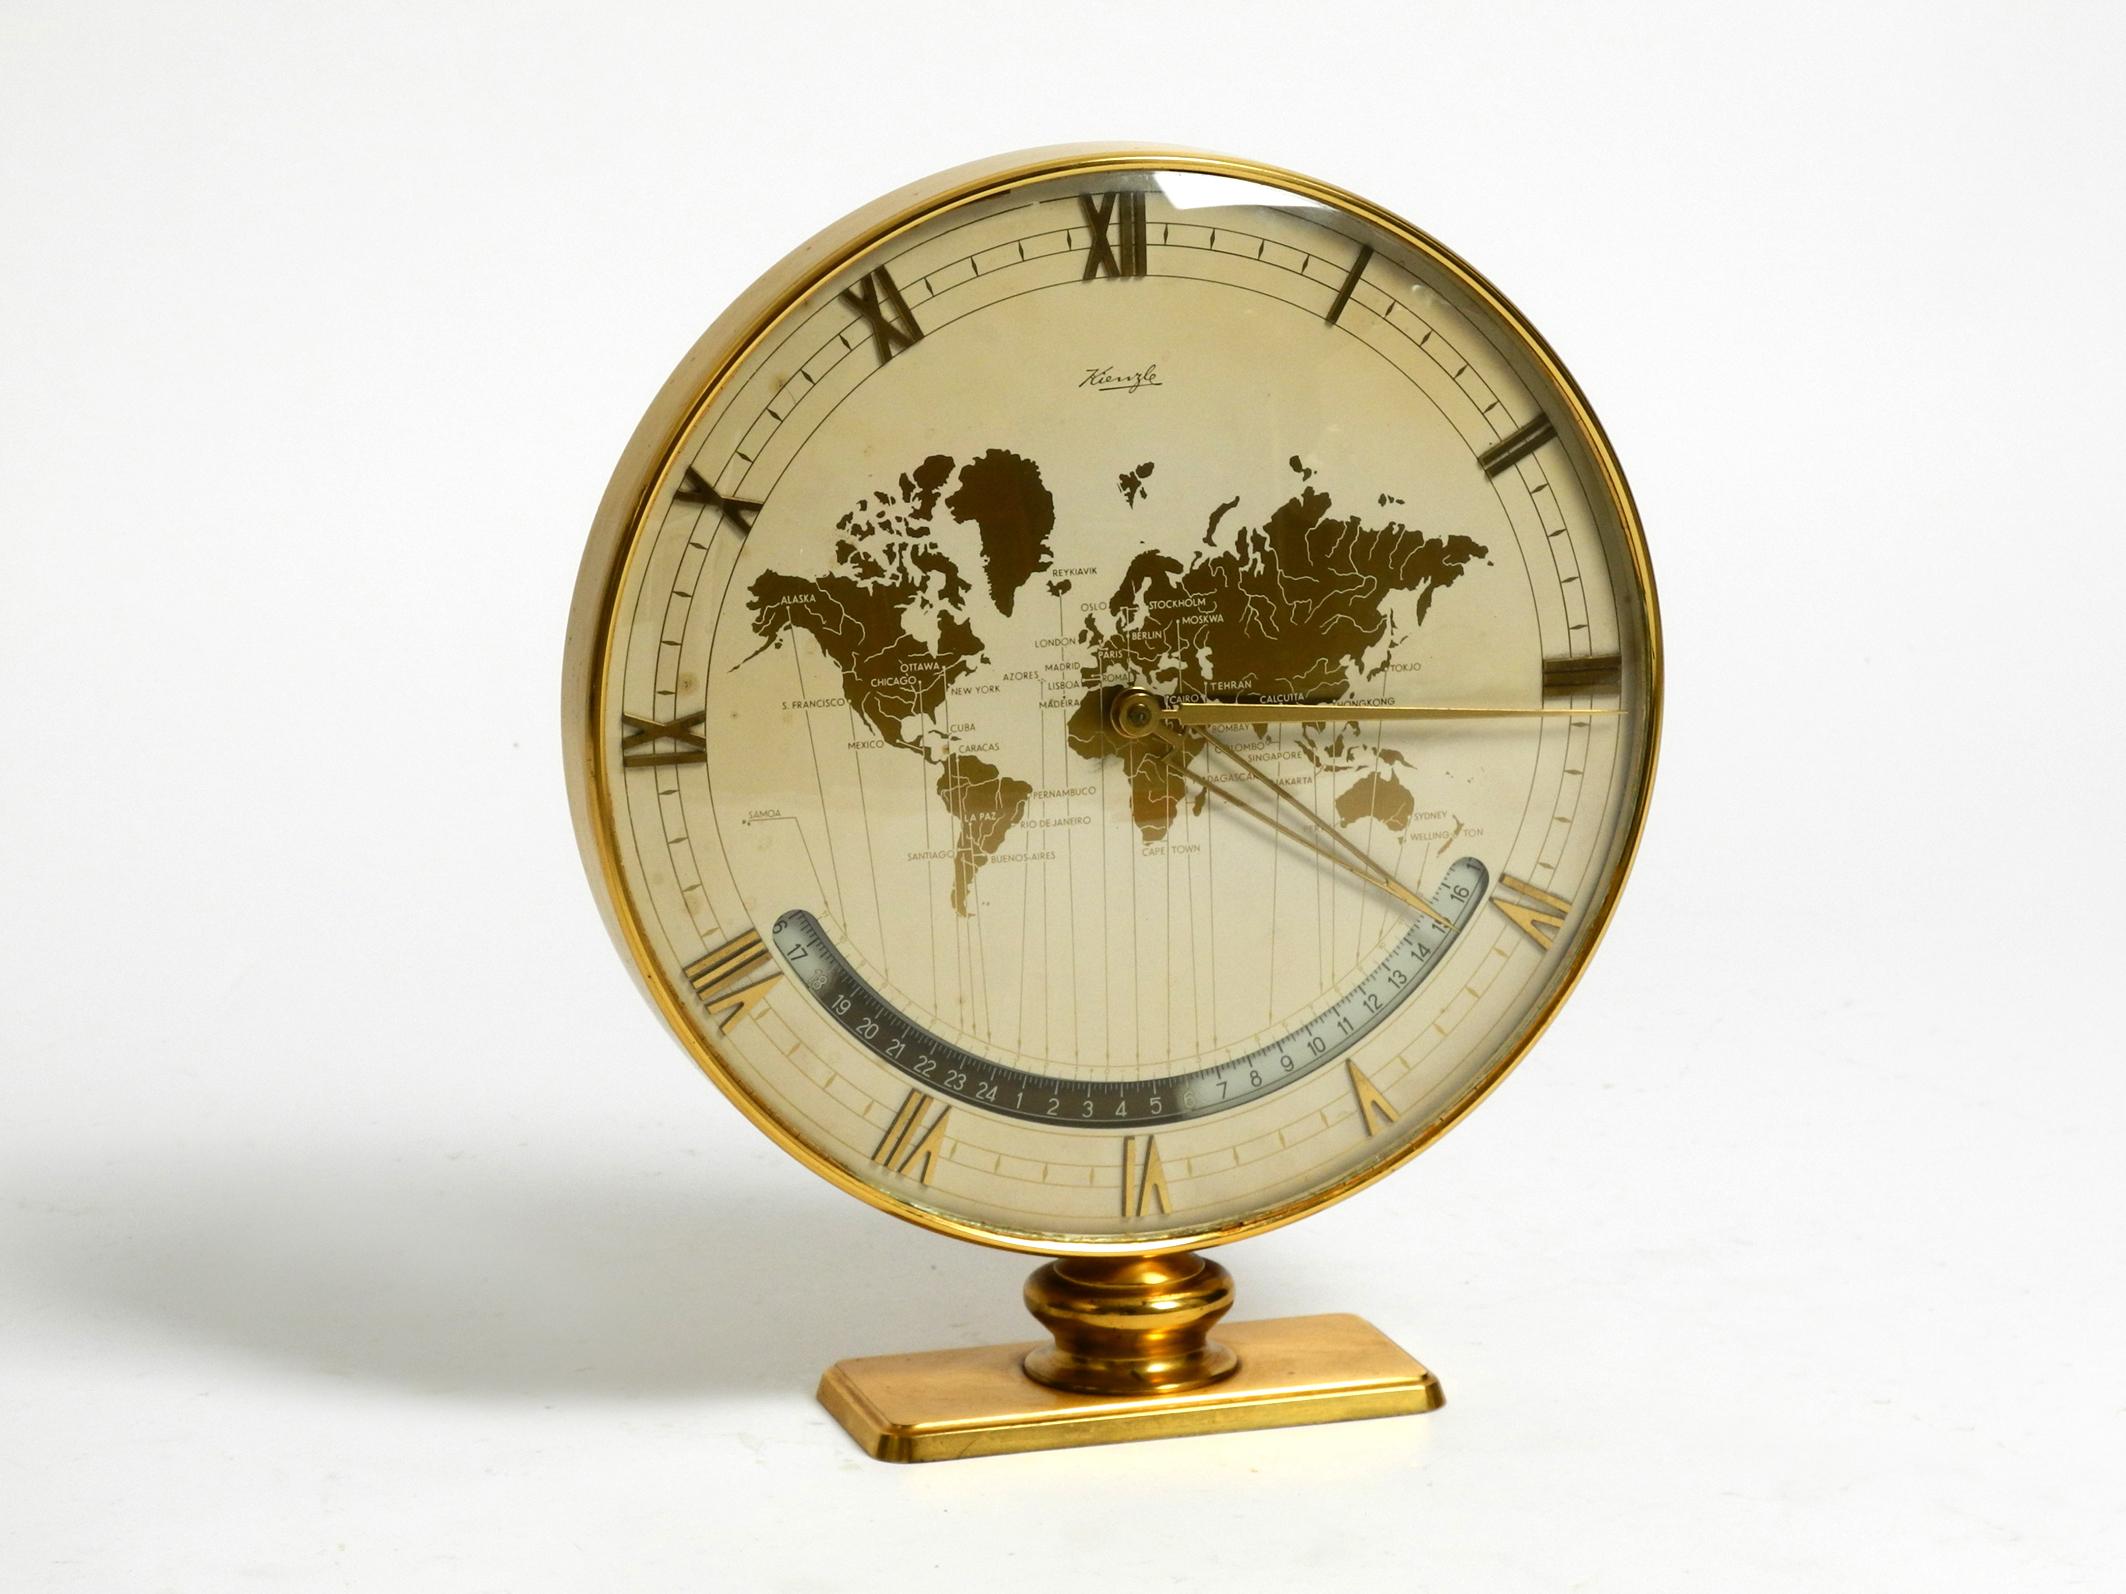 Raro reloj mundial grande y pesado de latón de mediados de siglo, obra de Kienzle.
Diseño de Heinrich Johannes Möller. Fabricado en Alemania.
Kienzle es la empresa de relojes más antigua de Alemania.
Fue fundada en 1822 por Johannes Schlenker en